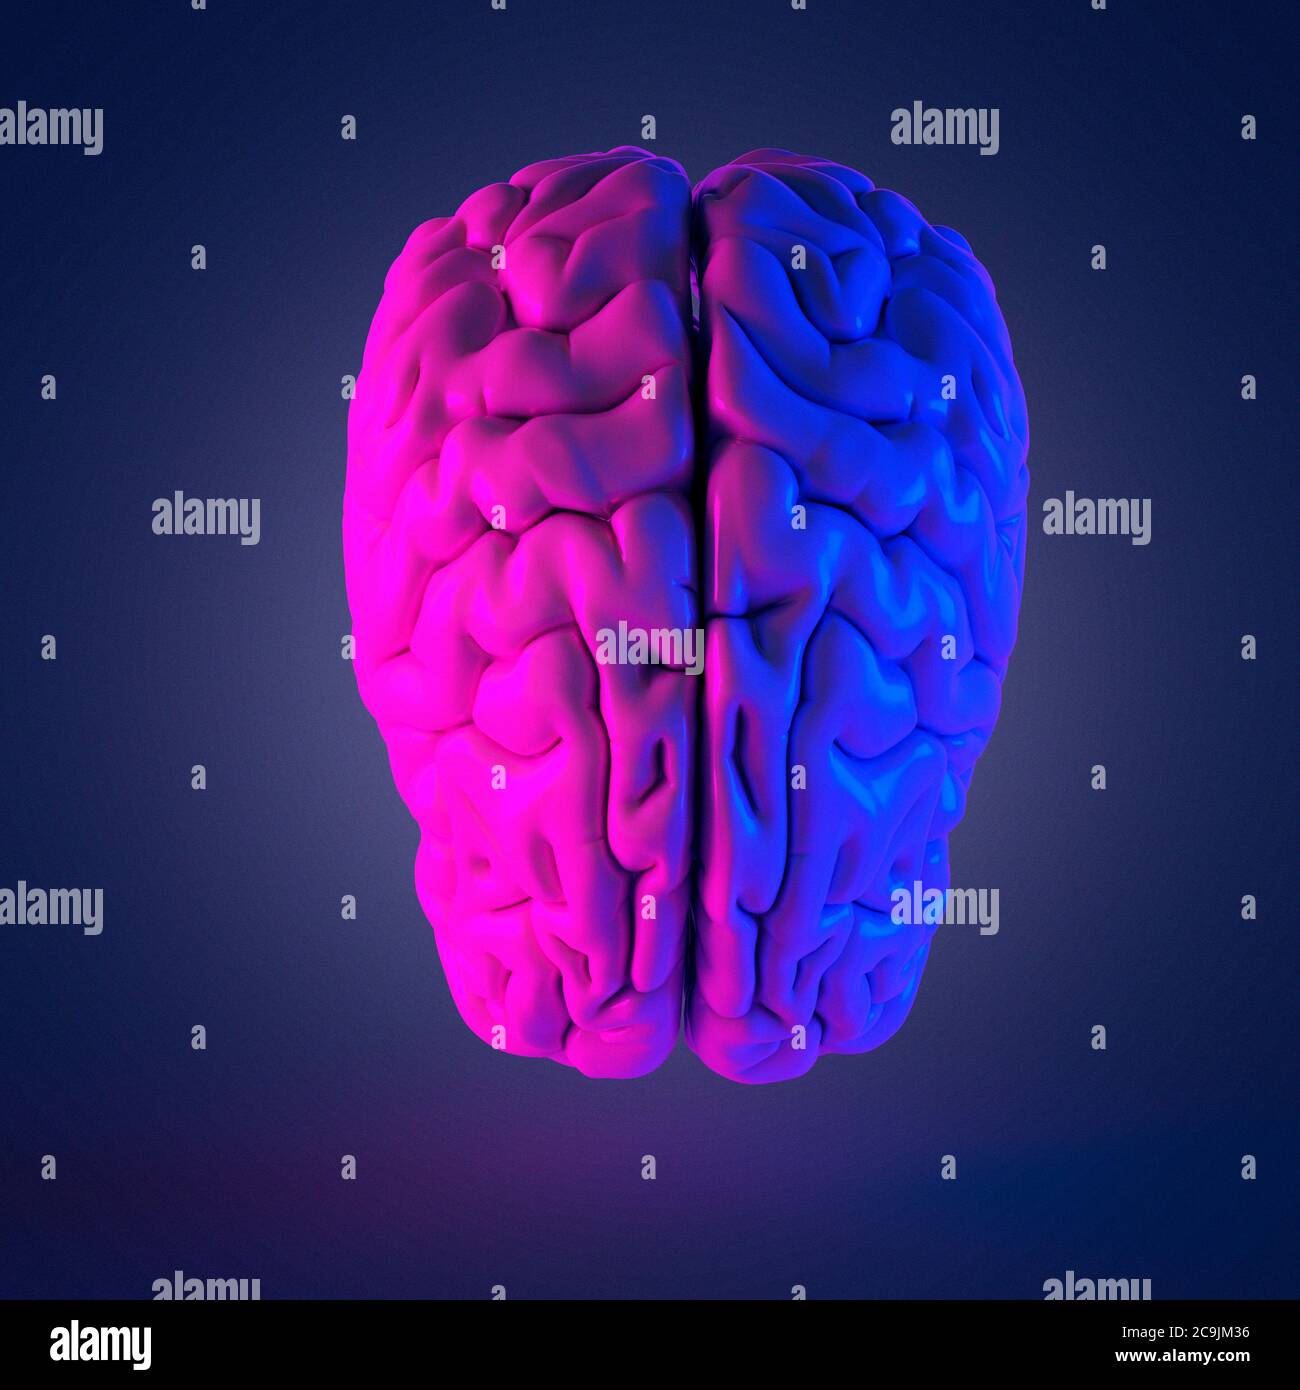 Menschliche Gehirn, Computer Bild Stockfotografie - Alamy